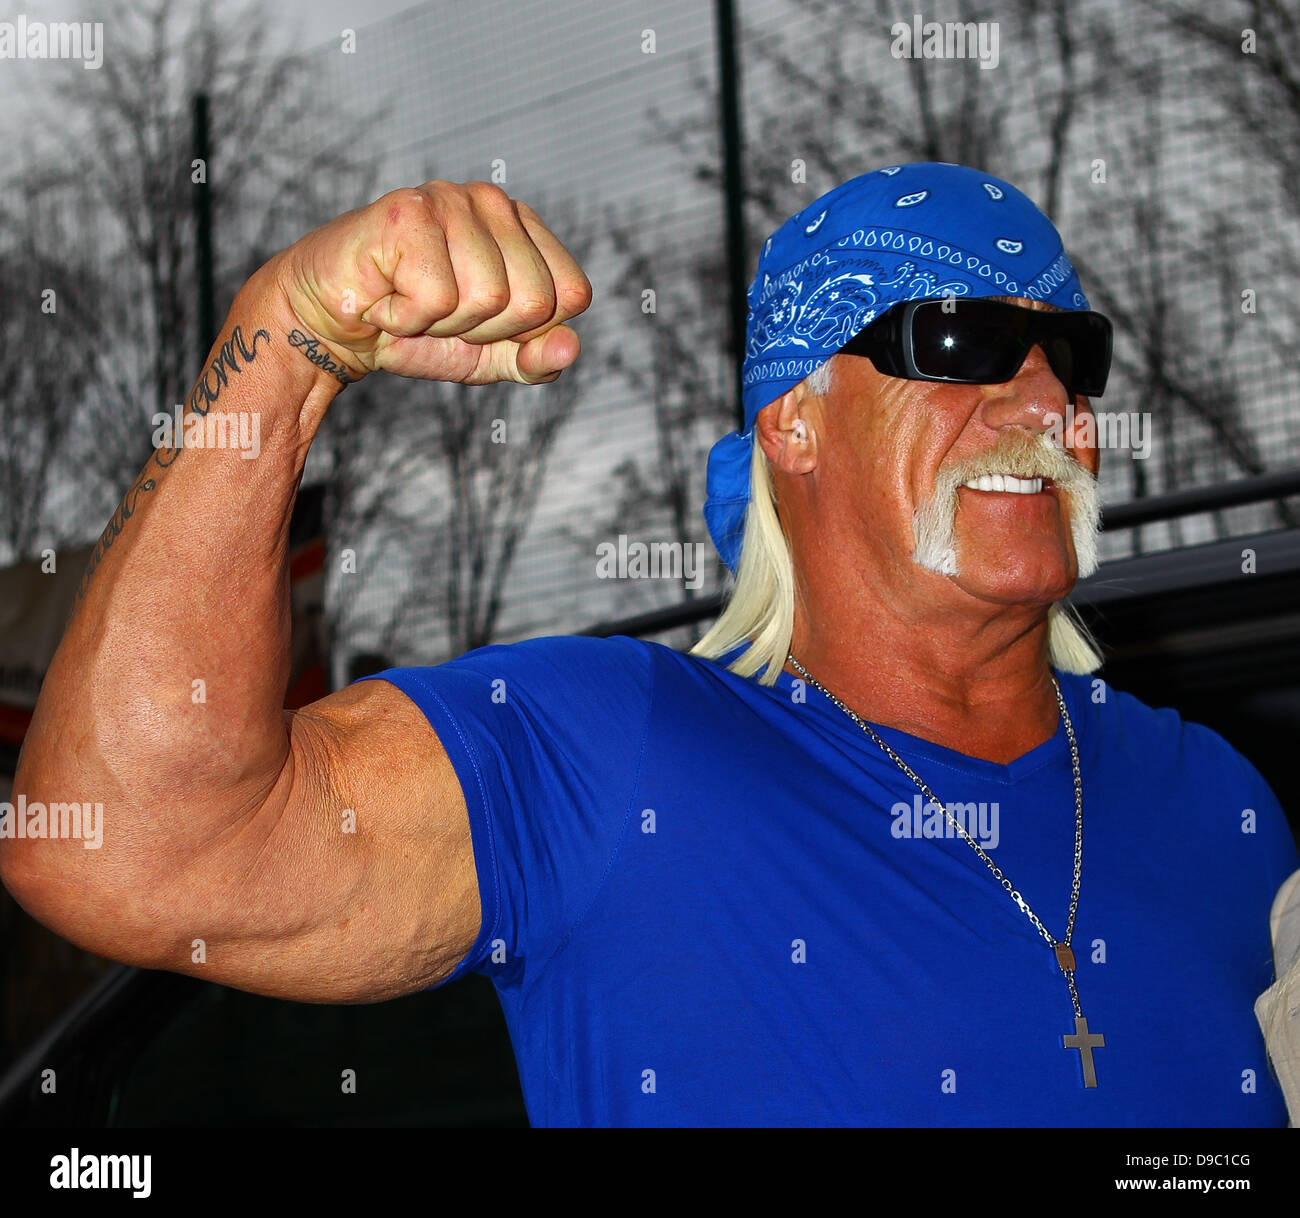 Hulk Hogan arrivant à talksport studios de radio Londres, Angleterre - 25.01.12 Banque D'Images